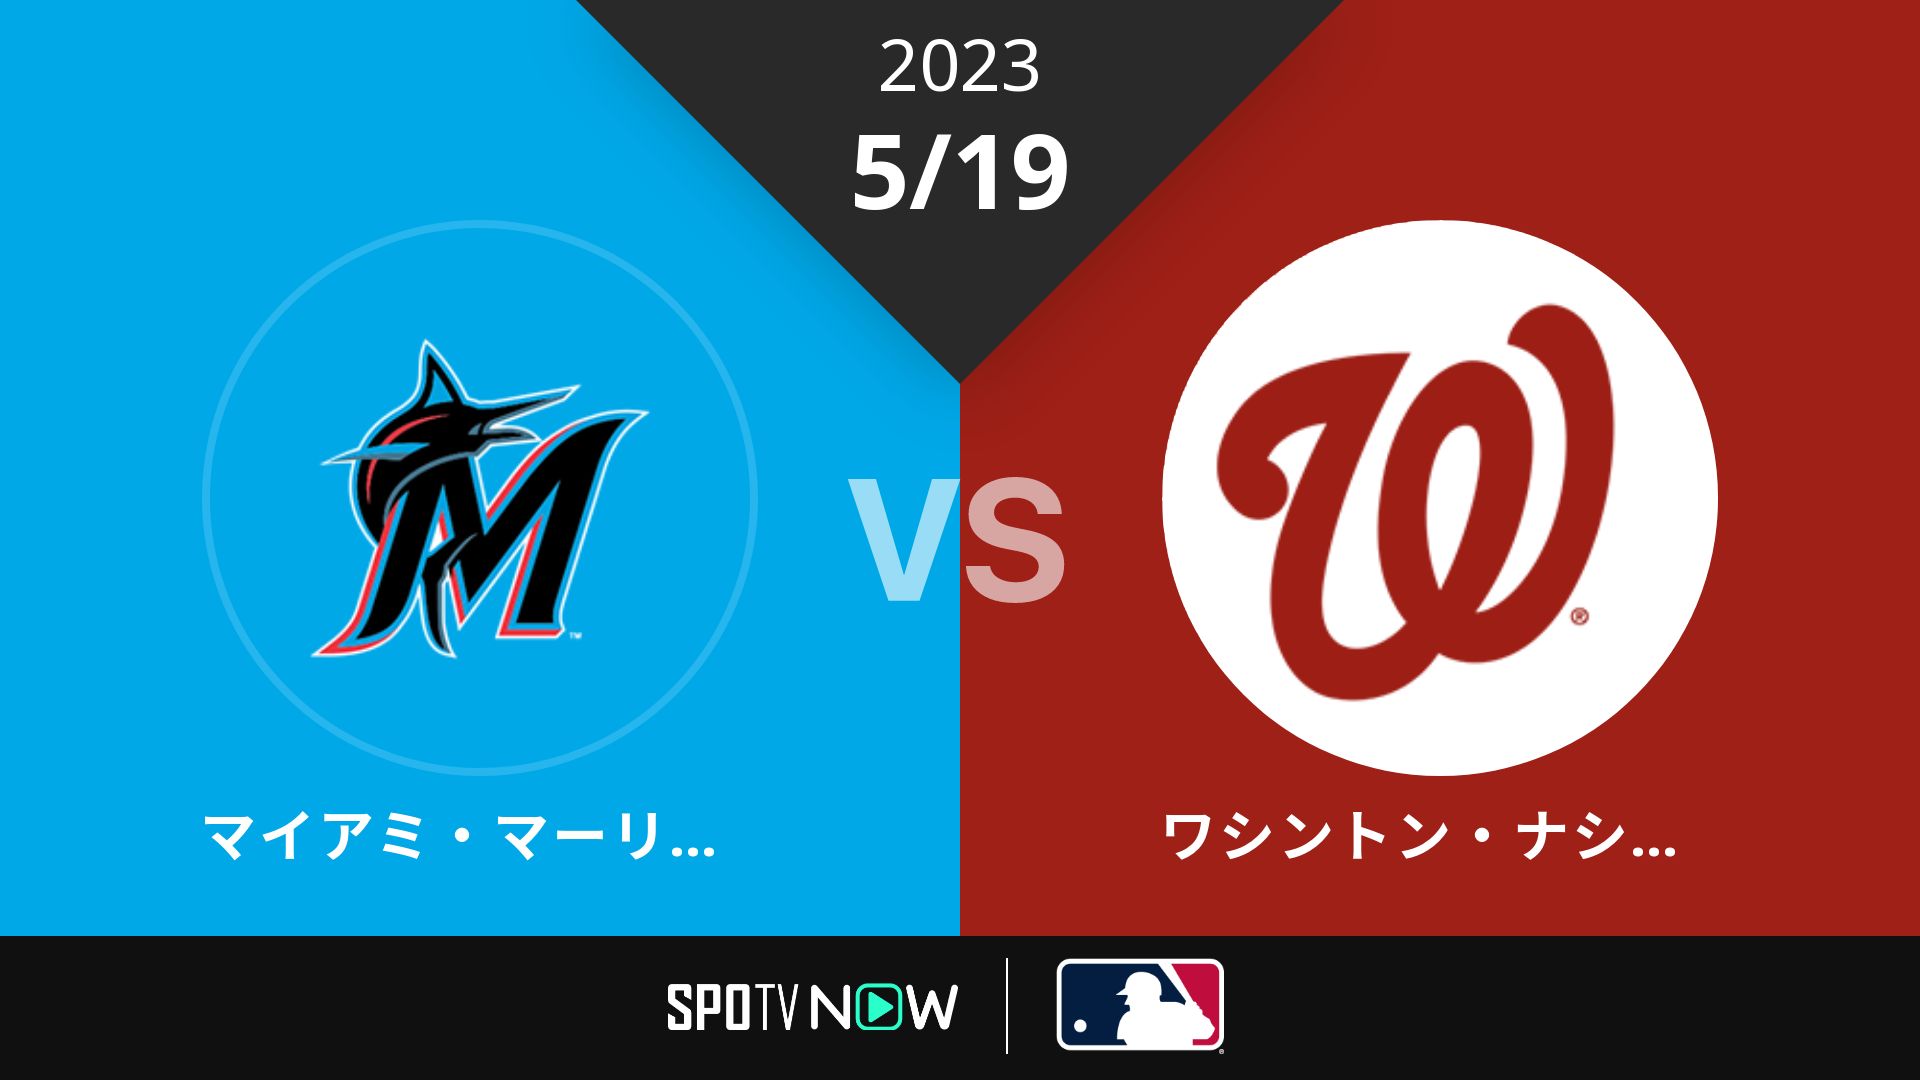 2023/5/19 マーリンズ vs ナショナルズ [MLB]